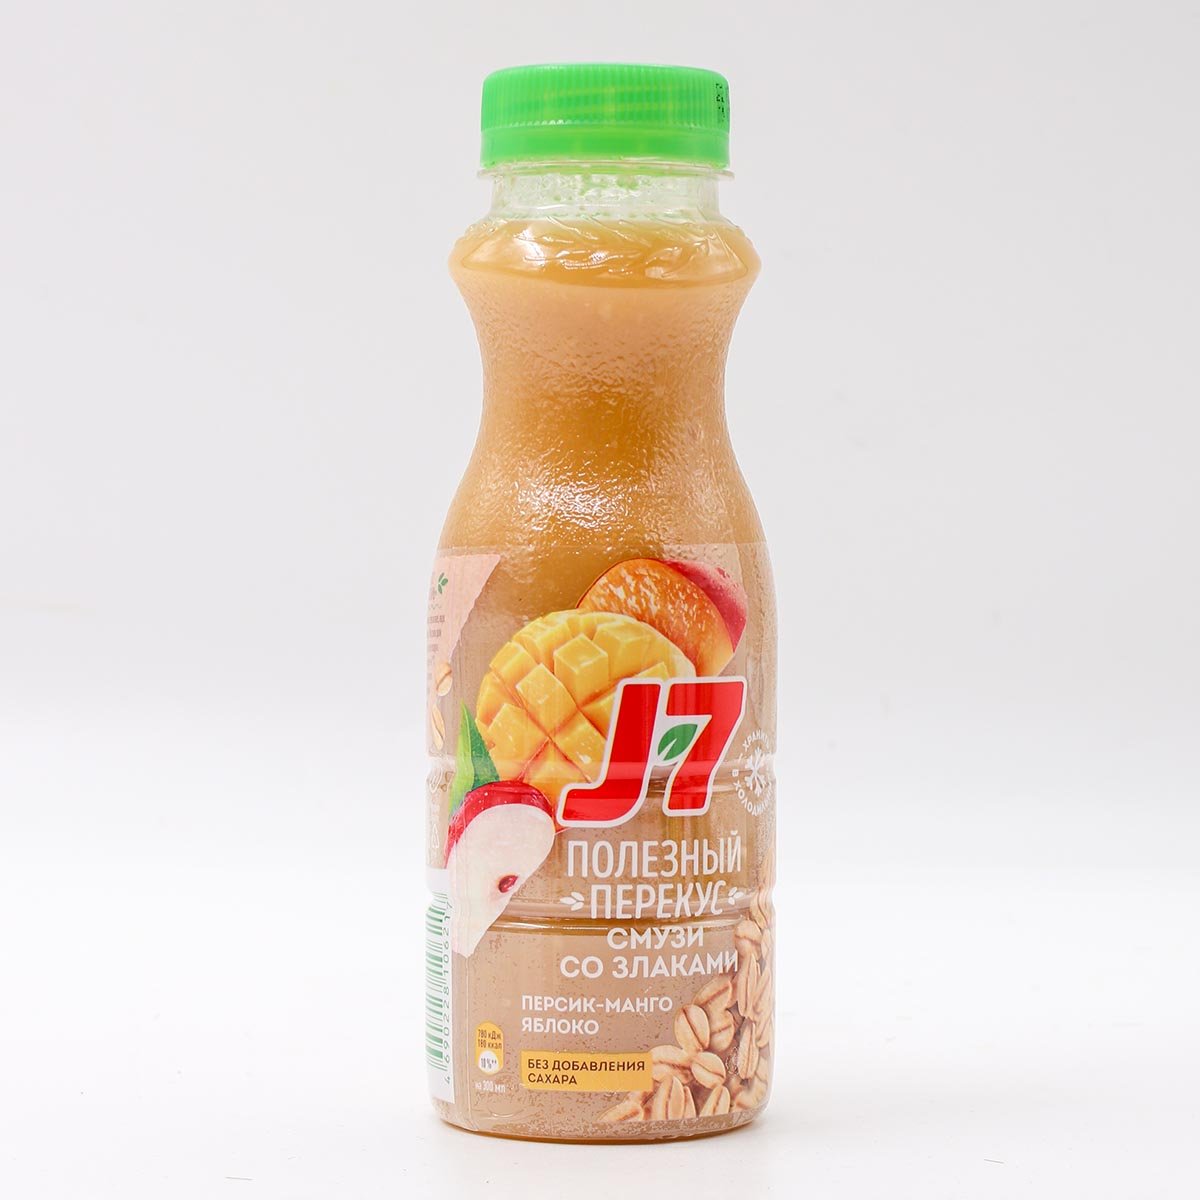 Питьевая продукция. Смузи j7 персик манго яблоко 0,3 бутылка. Питьевые продукты. Продукт питьевой j7 полезный завтрак из киви банана.